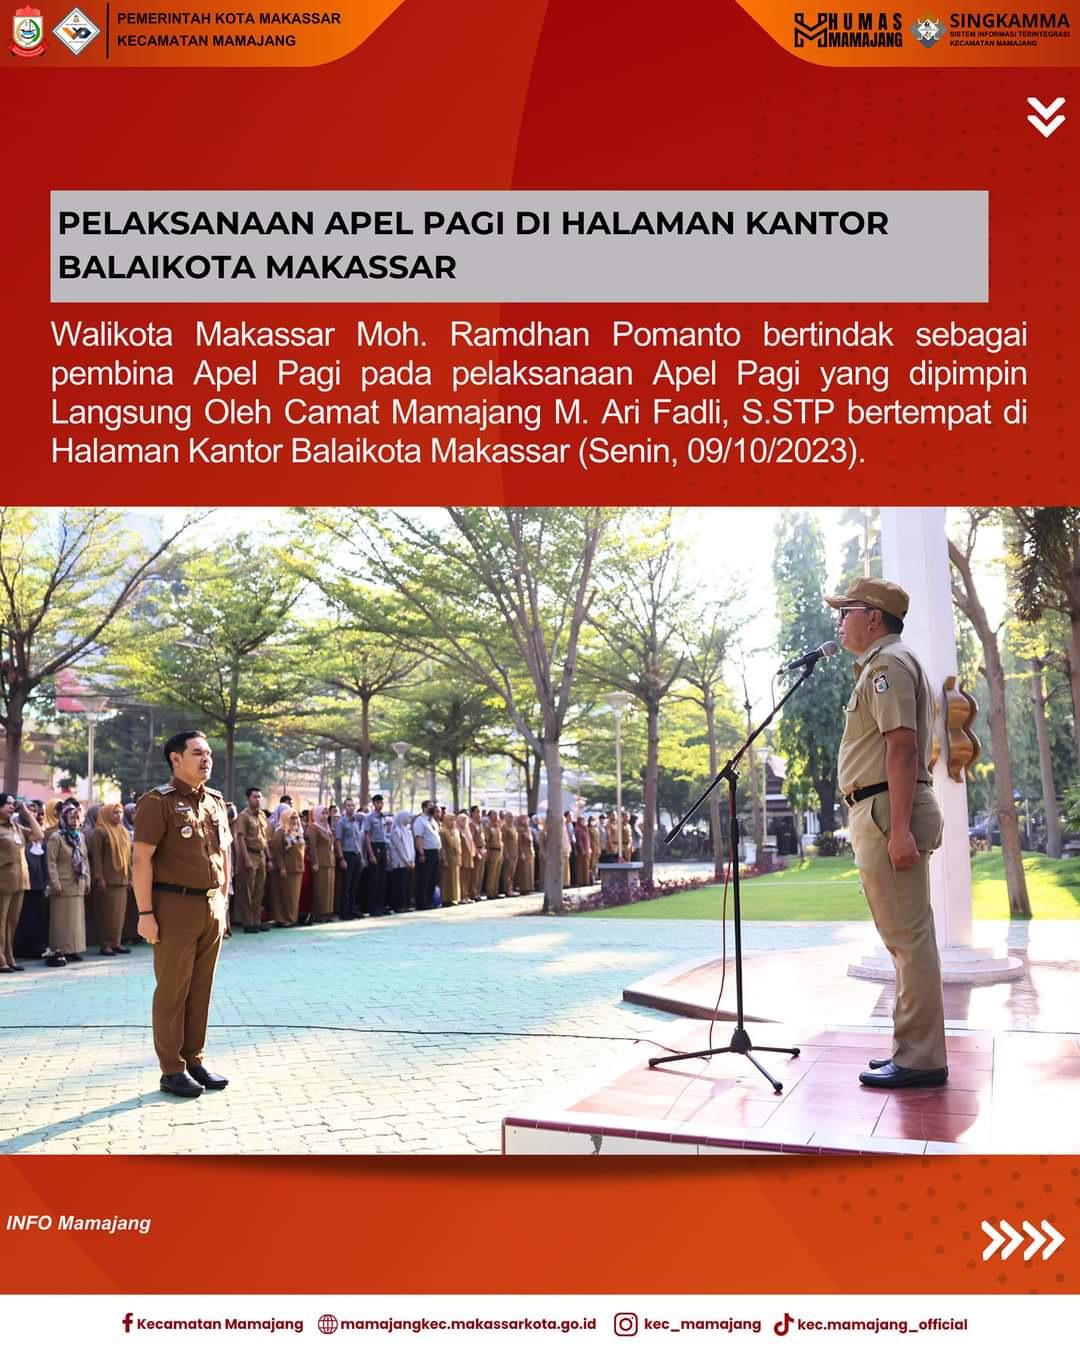 Gambar Camat Mamajang M. Ari Fadli S.STP Bertindak Sebagai Pimpinan Apel Pada Pelaksanaan Apel Pagi Di Halaman Kantor Balaikota